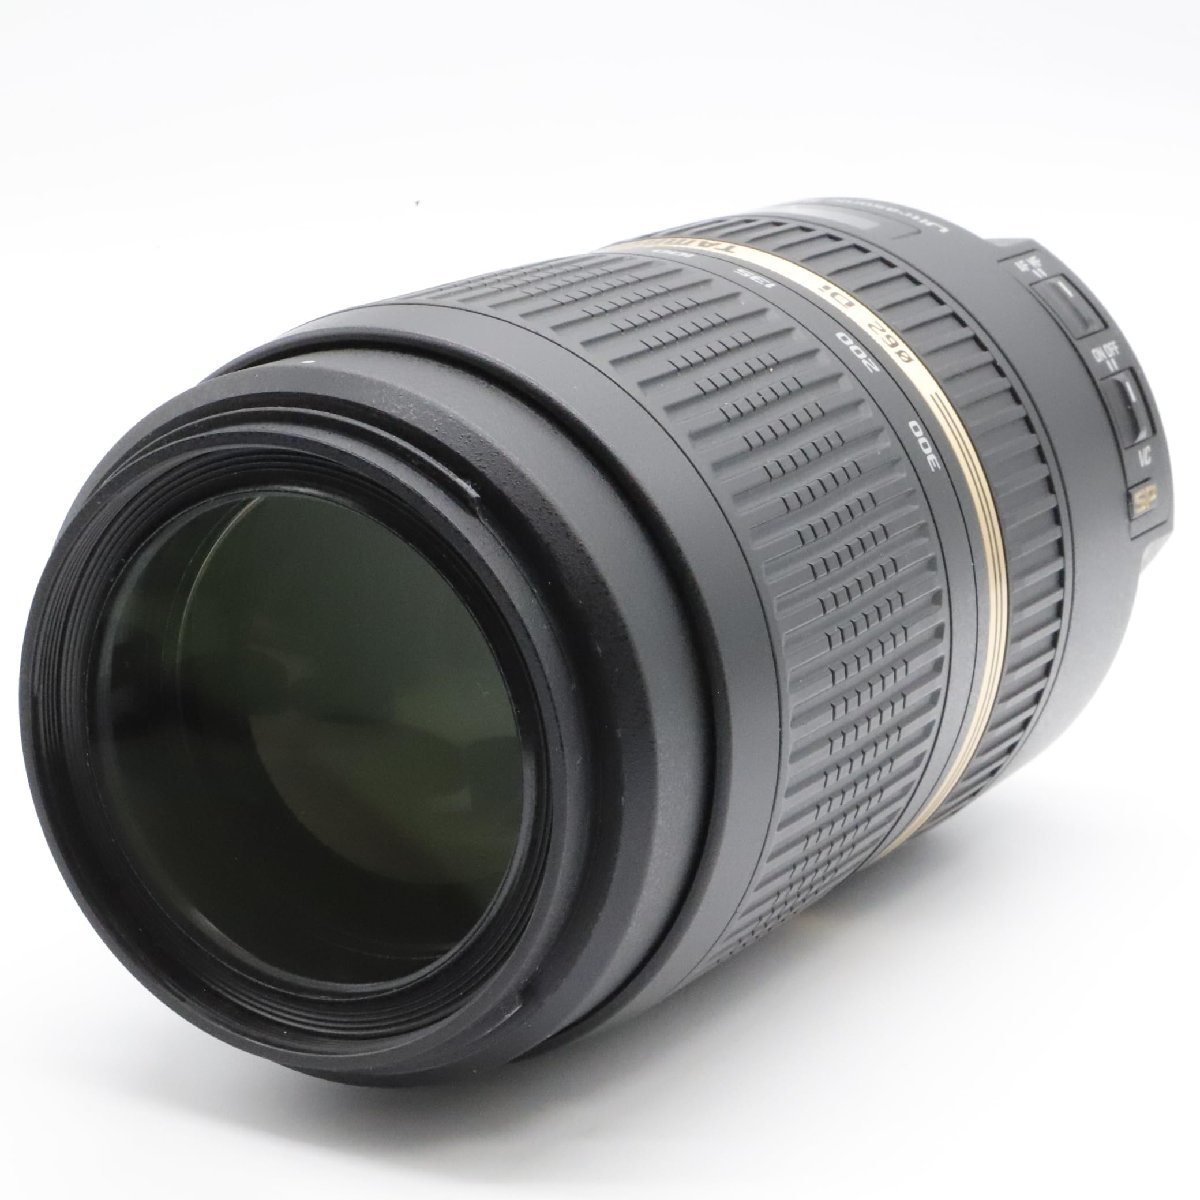 [ почти новый товар ]TAMRON взгляд издалека zoom линзы SP 70-300mm F4-5.6 Di VC USD Nikon для полный размер соответствует A005N